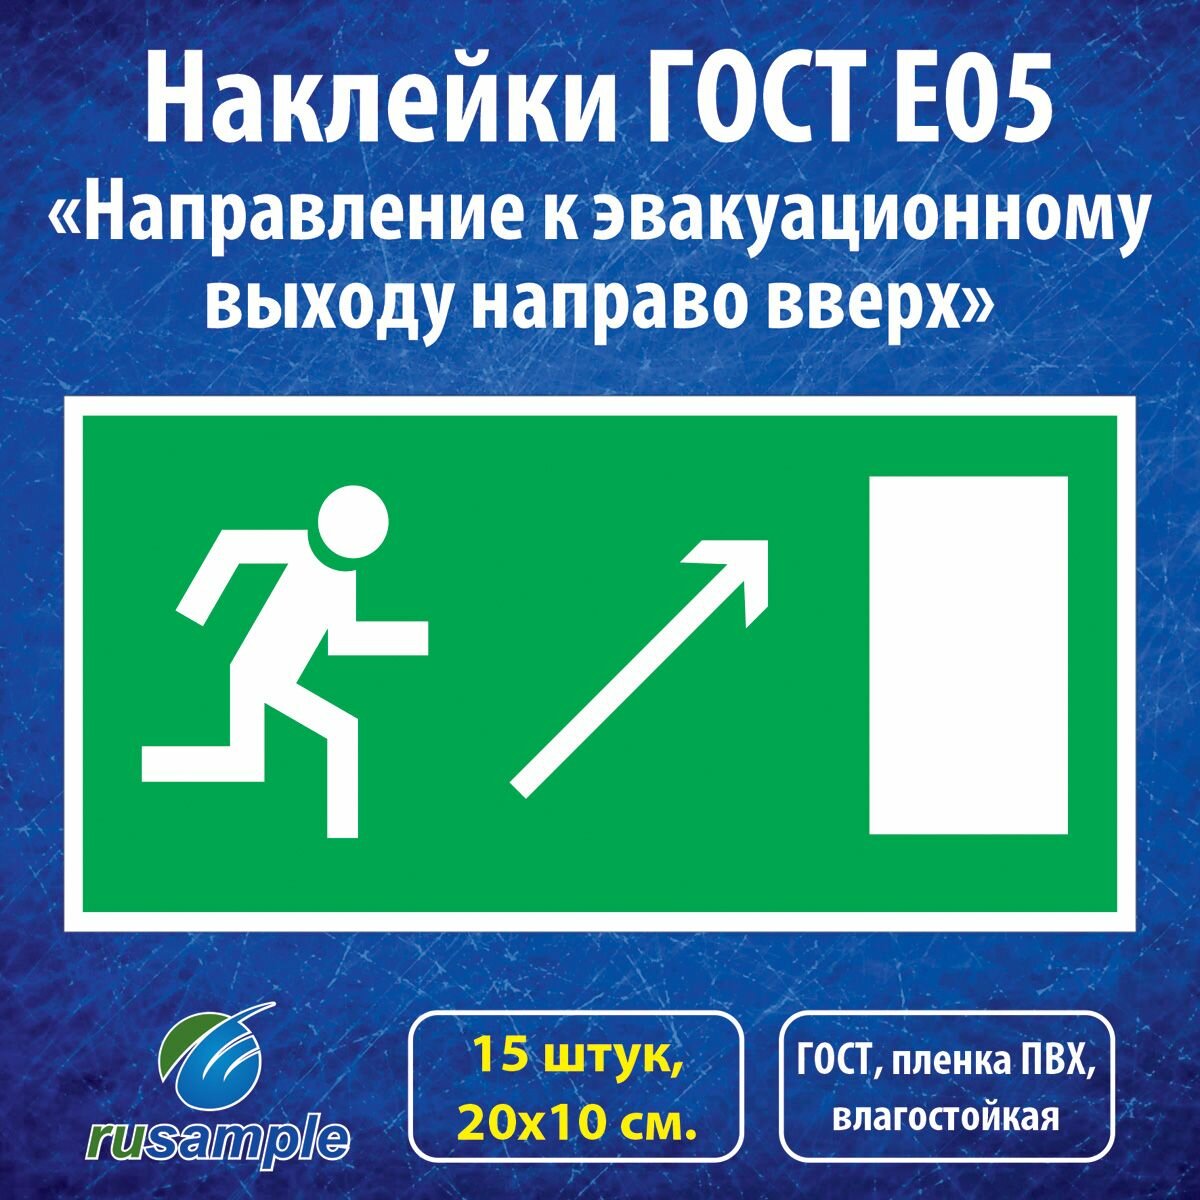 Наклейки E05 "Направление к эвакуационному выходу направо вверх", ГОСТ 20х10 см, 15 штук